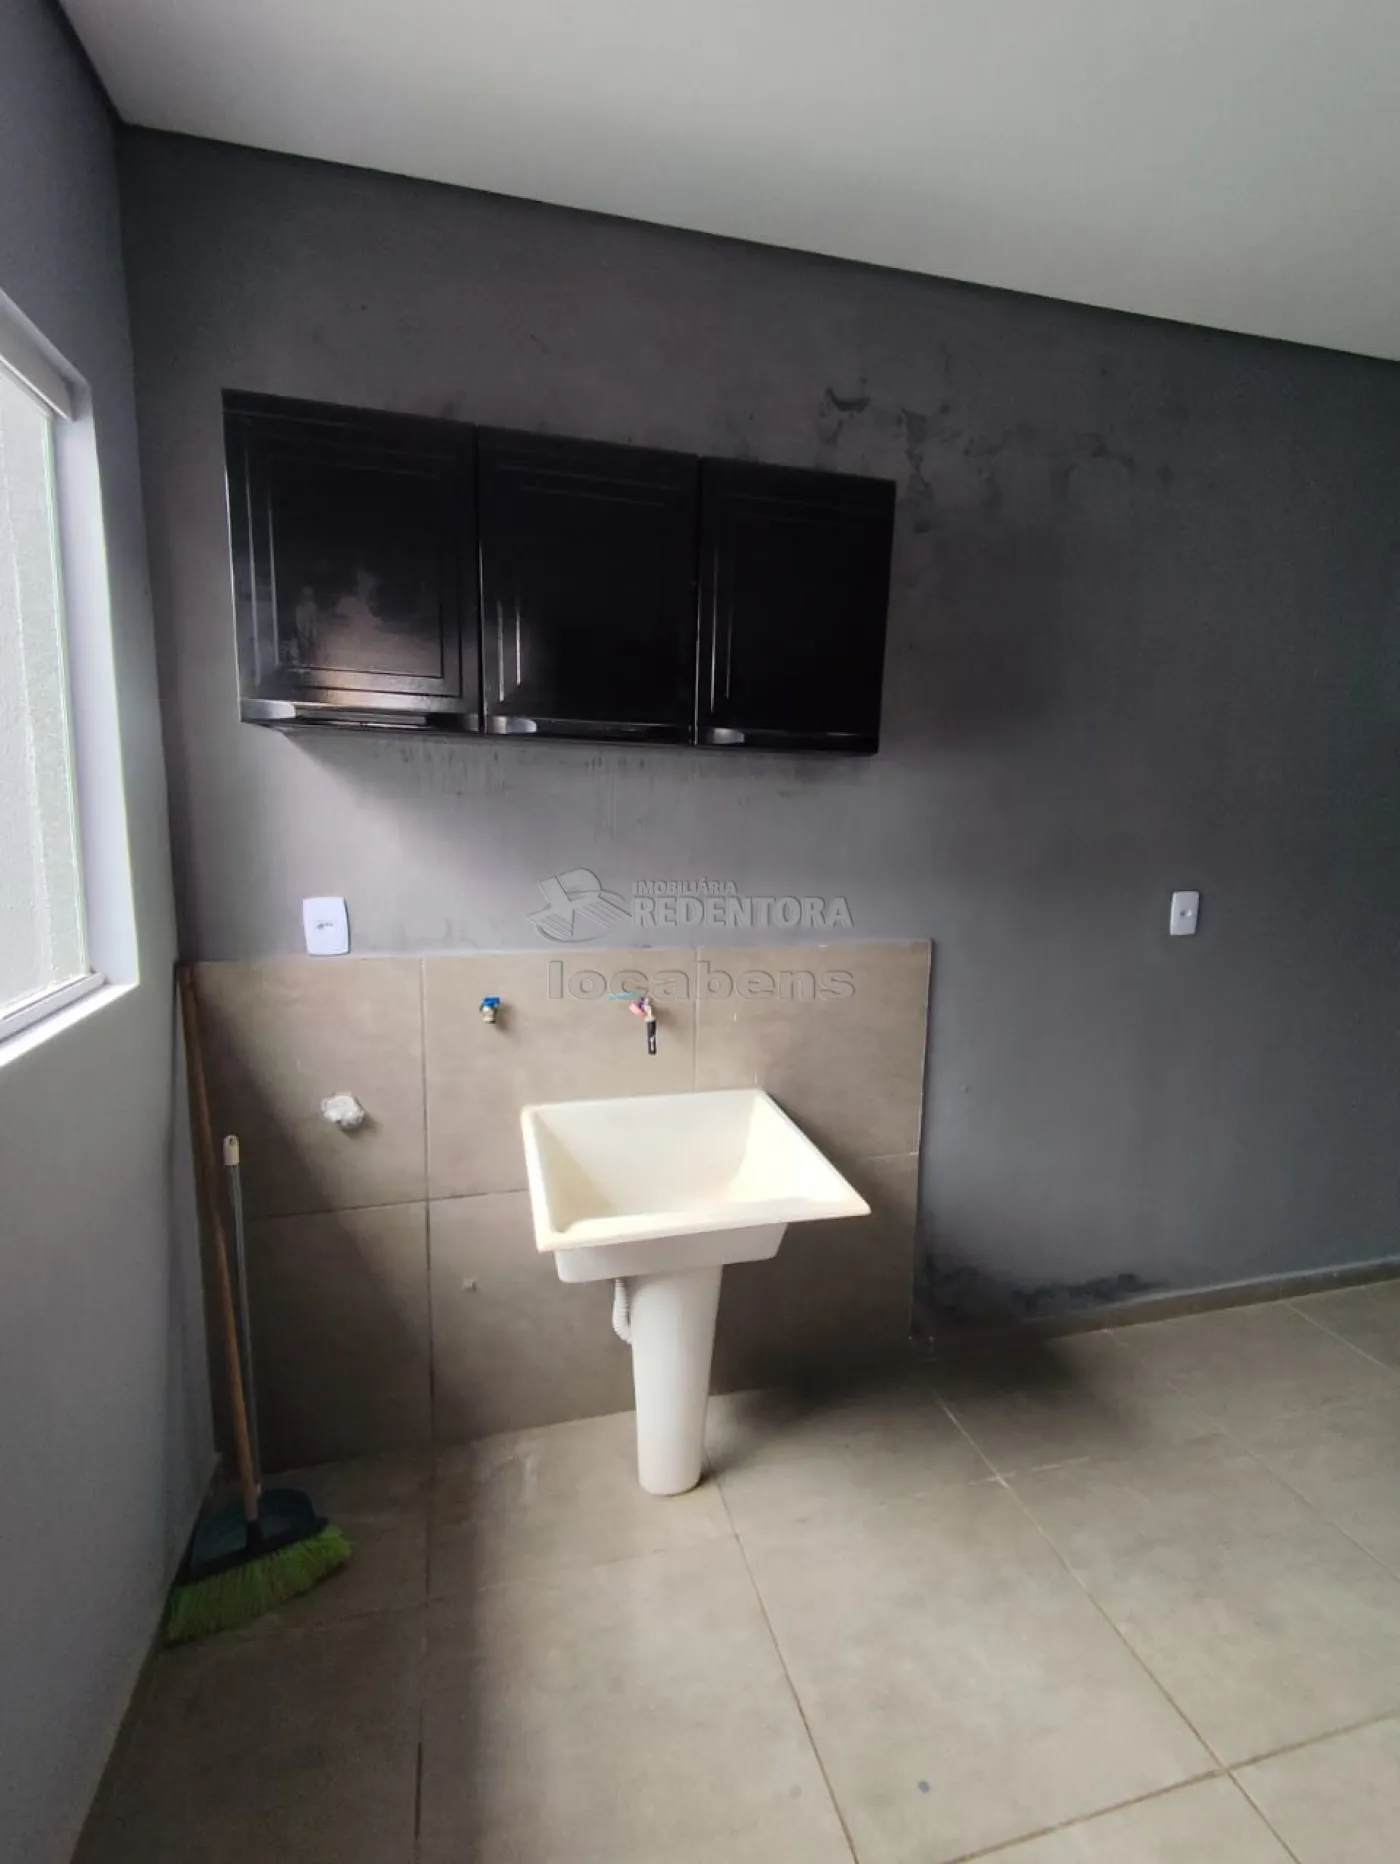 Comprar Casa / Padrão em São José do Rio Preto apenas R$ 260.000,00 - Foto 11